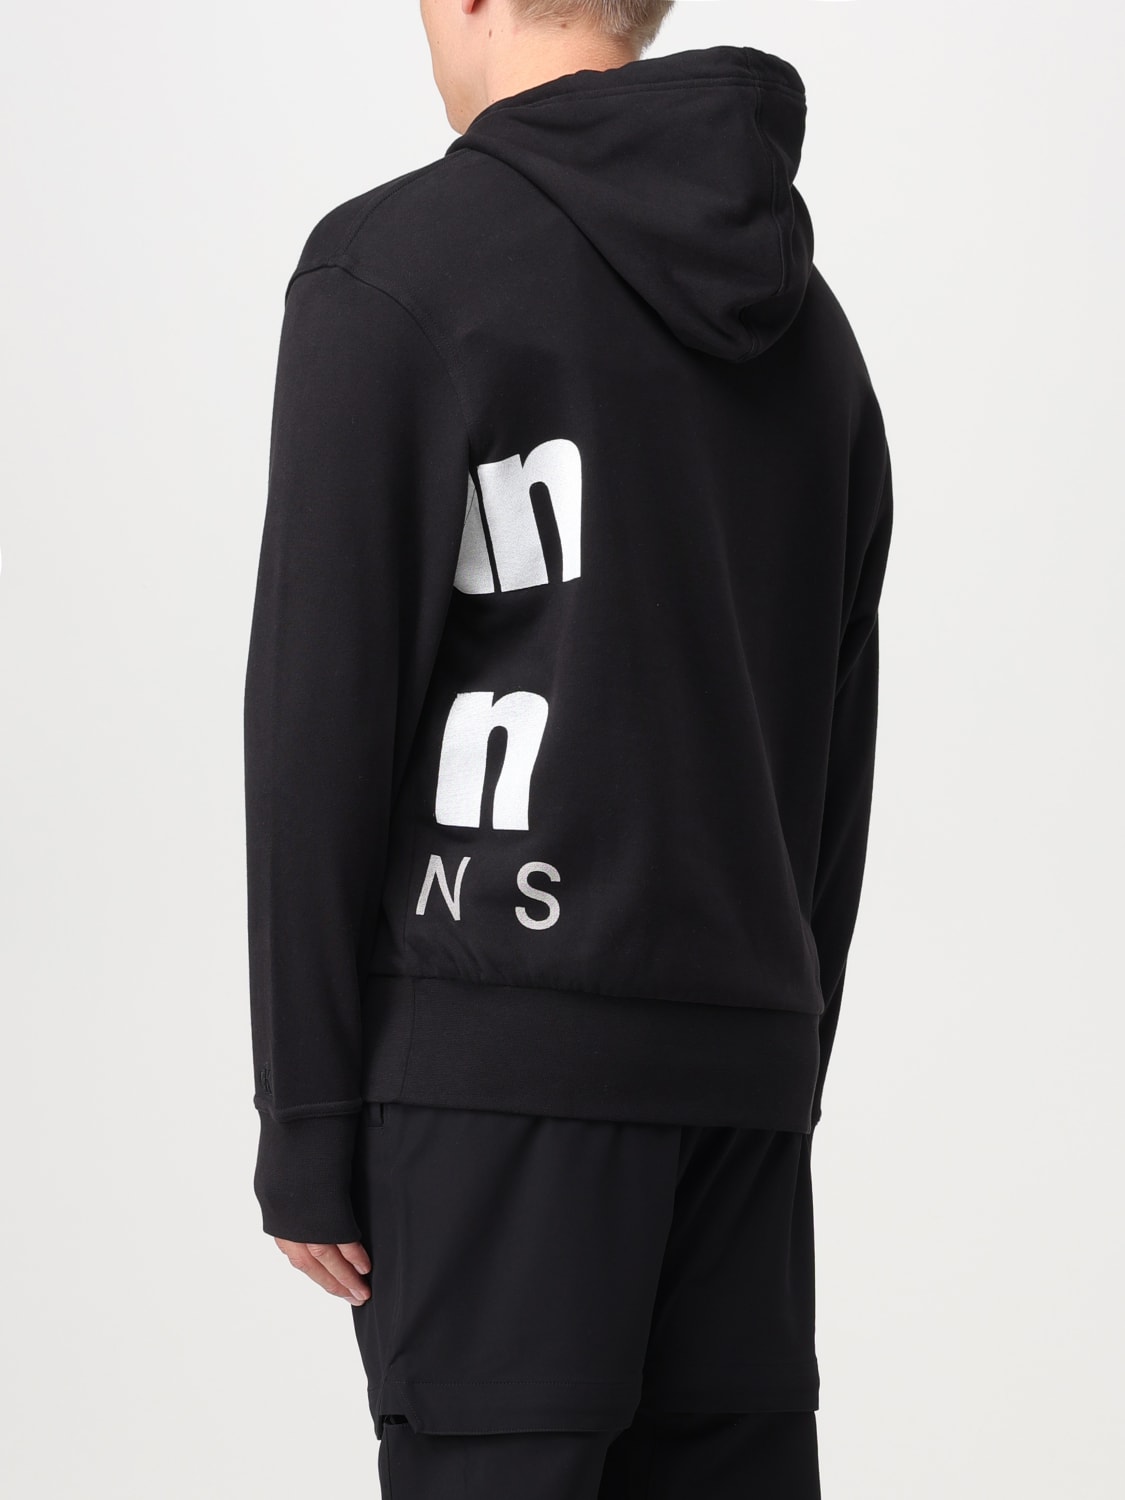 CALVIN KLEIN JEANS: sweatshirt for man - Black | Calvin Klein Jeans ...